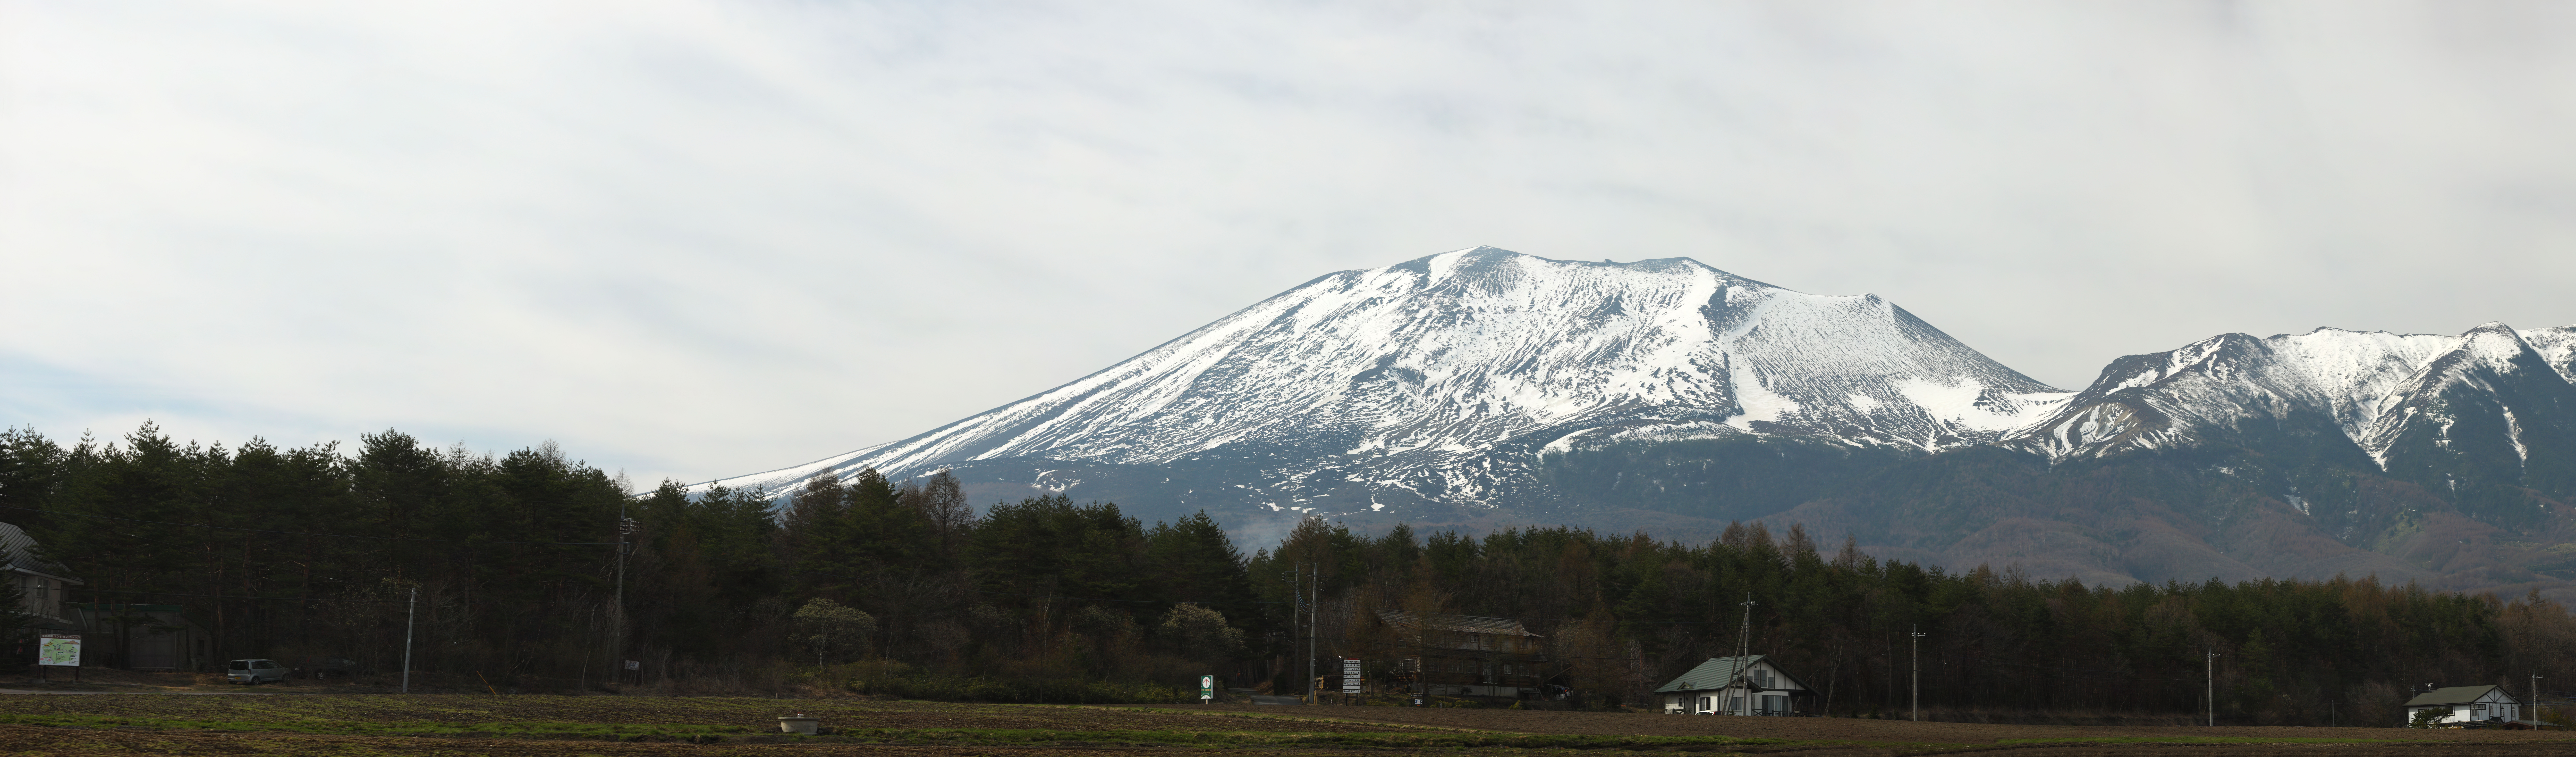 ,,, ,,,Mt. - yama Asama., ., .,  Bave., .